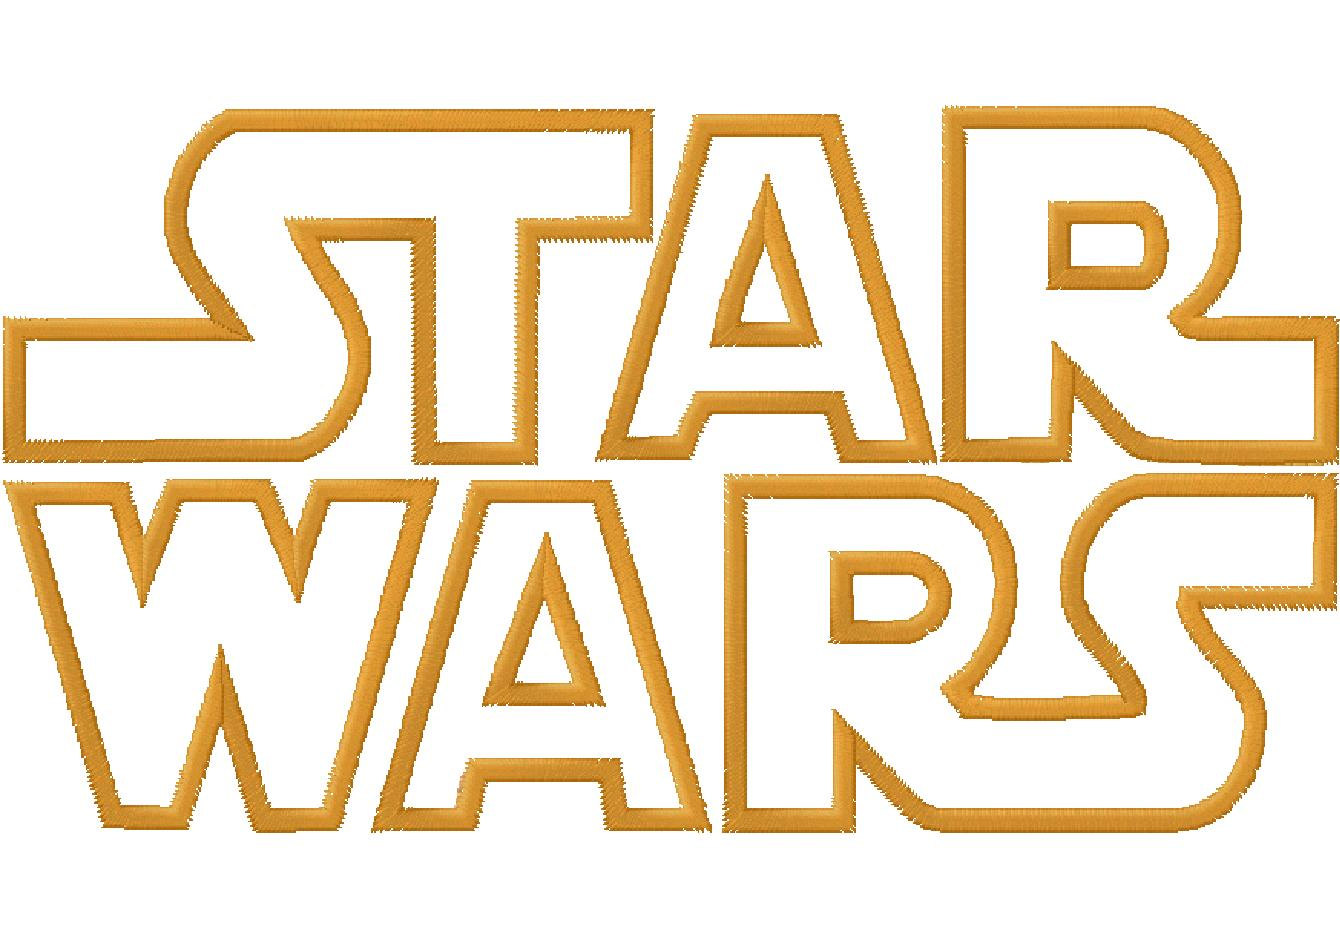 Star Wars Logos